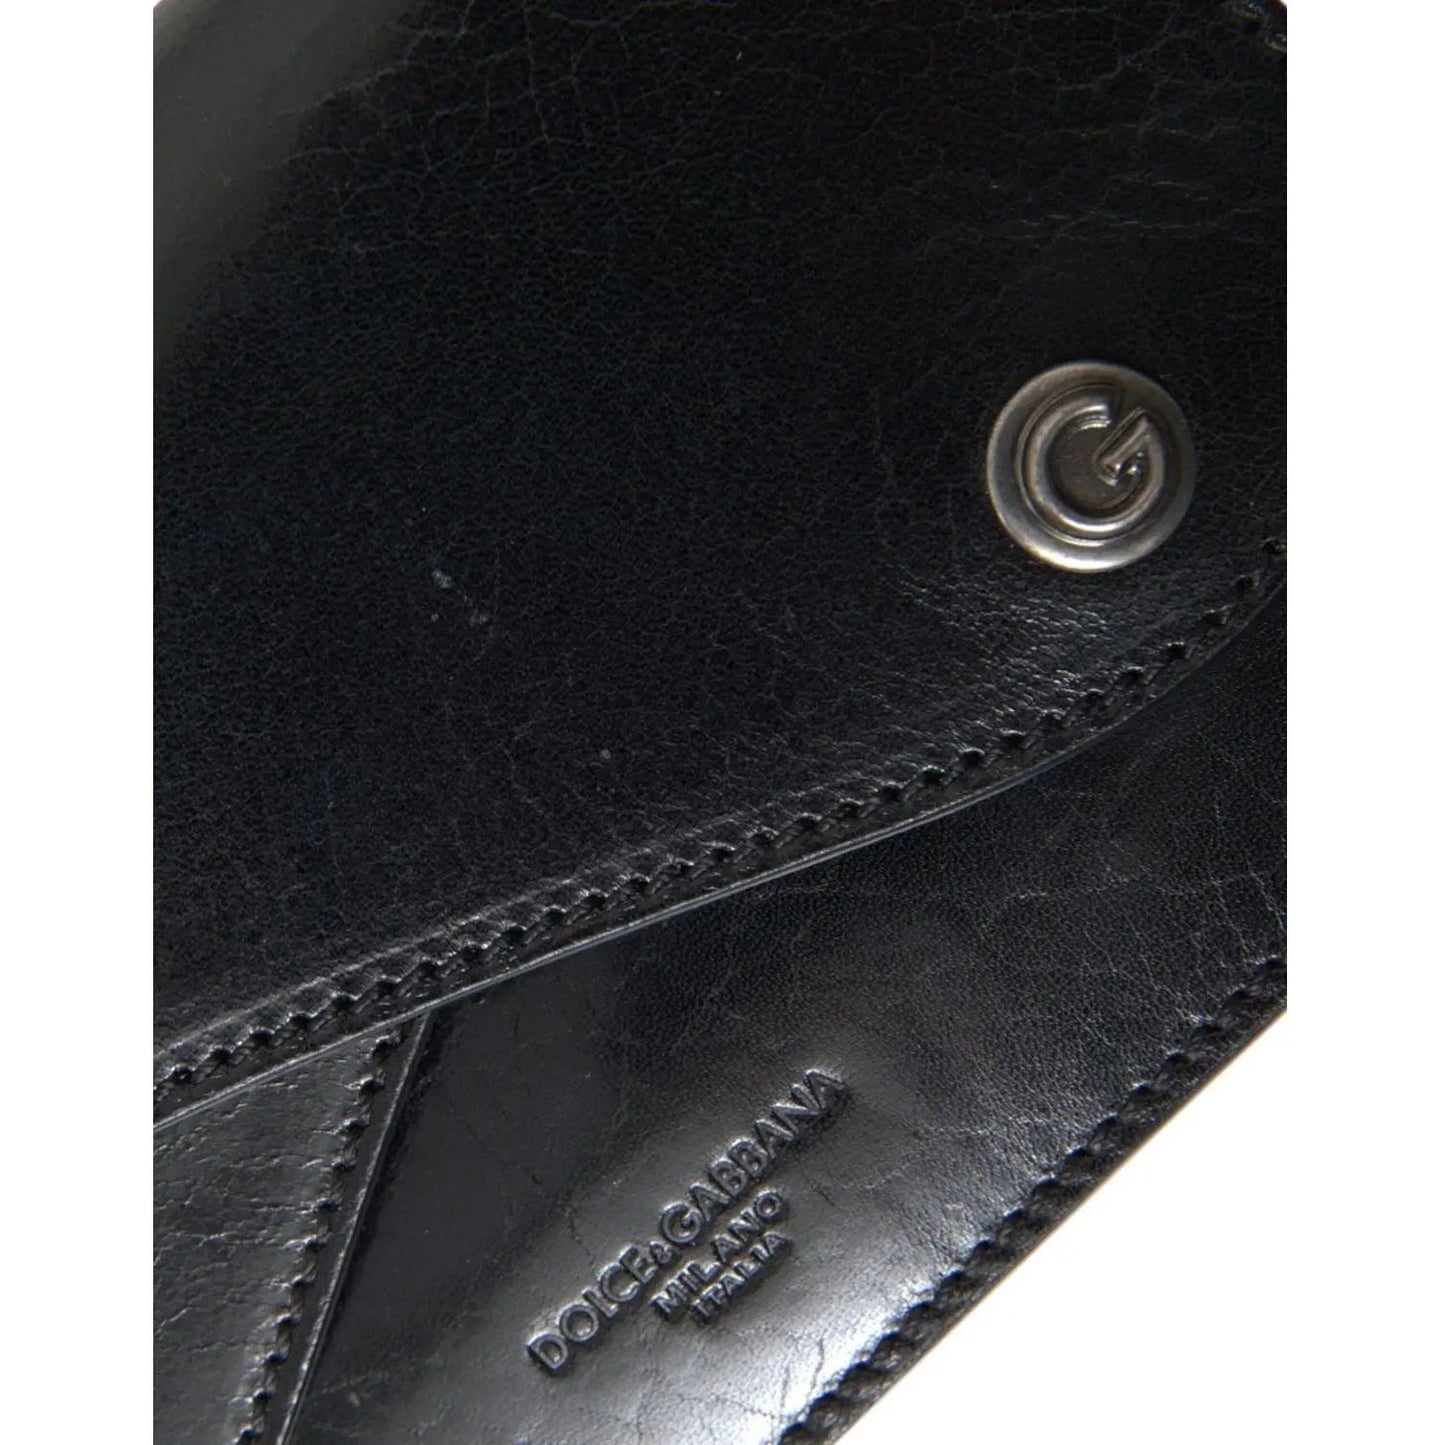 Dolce & Gabbana Sleek Black Leather Shoulder Bag sleek-black-leather-shoulder-bag-1